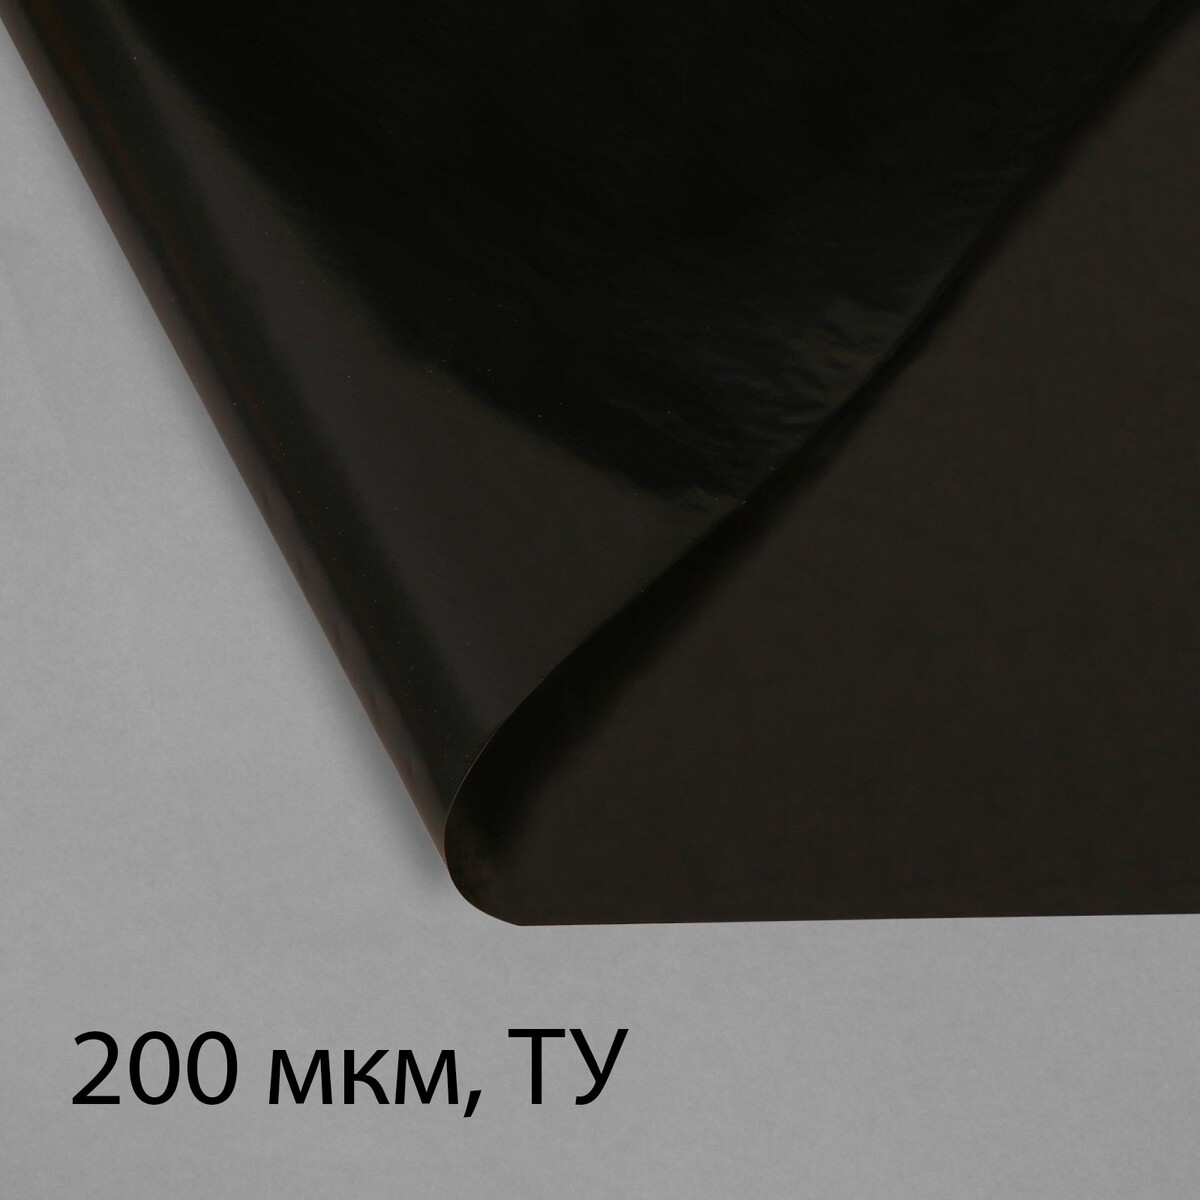 Пленка из полиэтилена, техническая, толщина 200 мкм, черная, 10 × 3 м, рукав (1.5 м × 2), эконом 50%, greengo